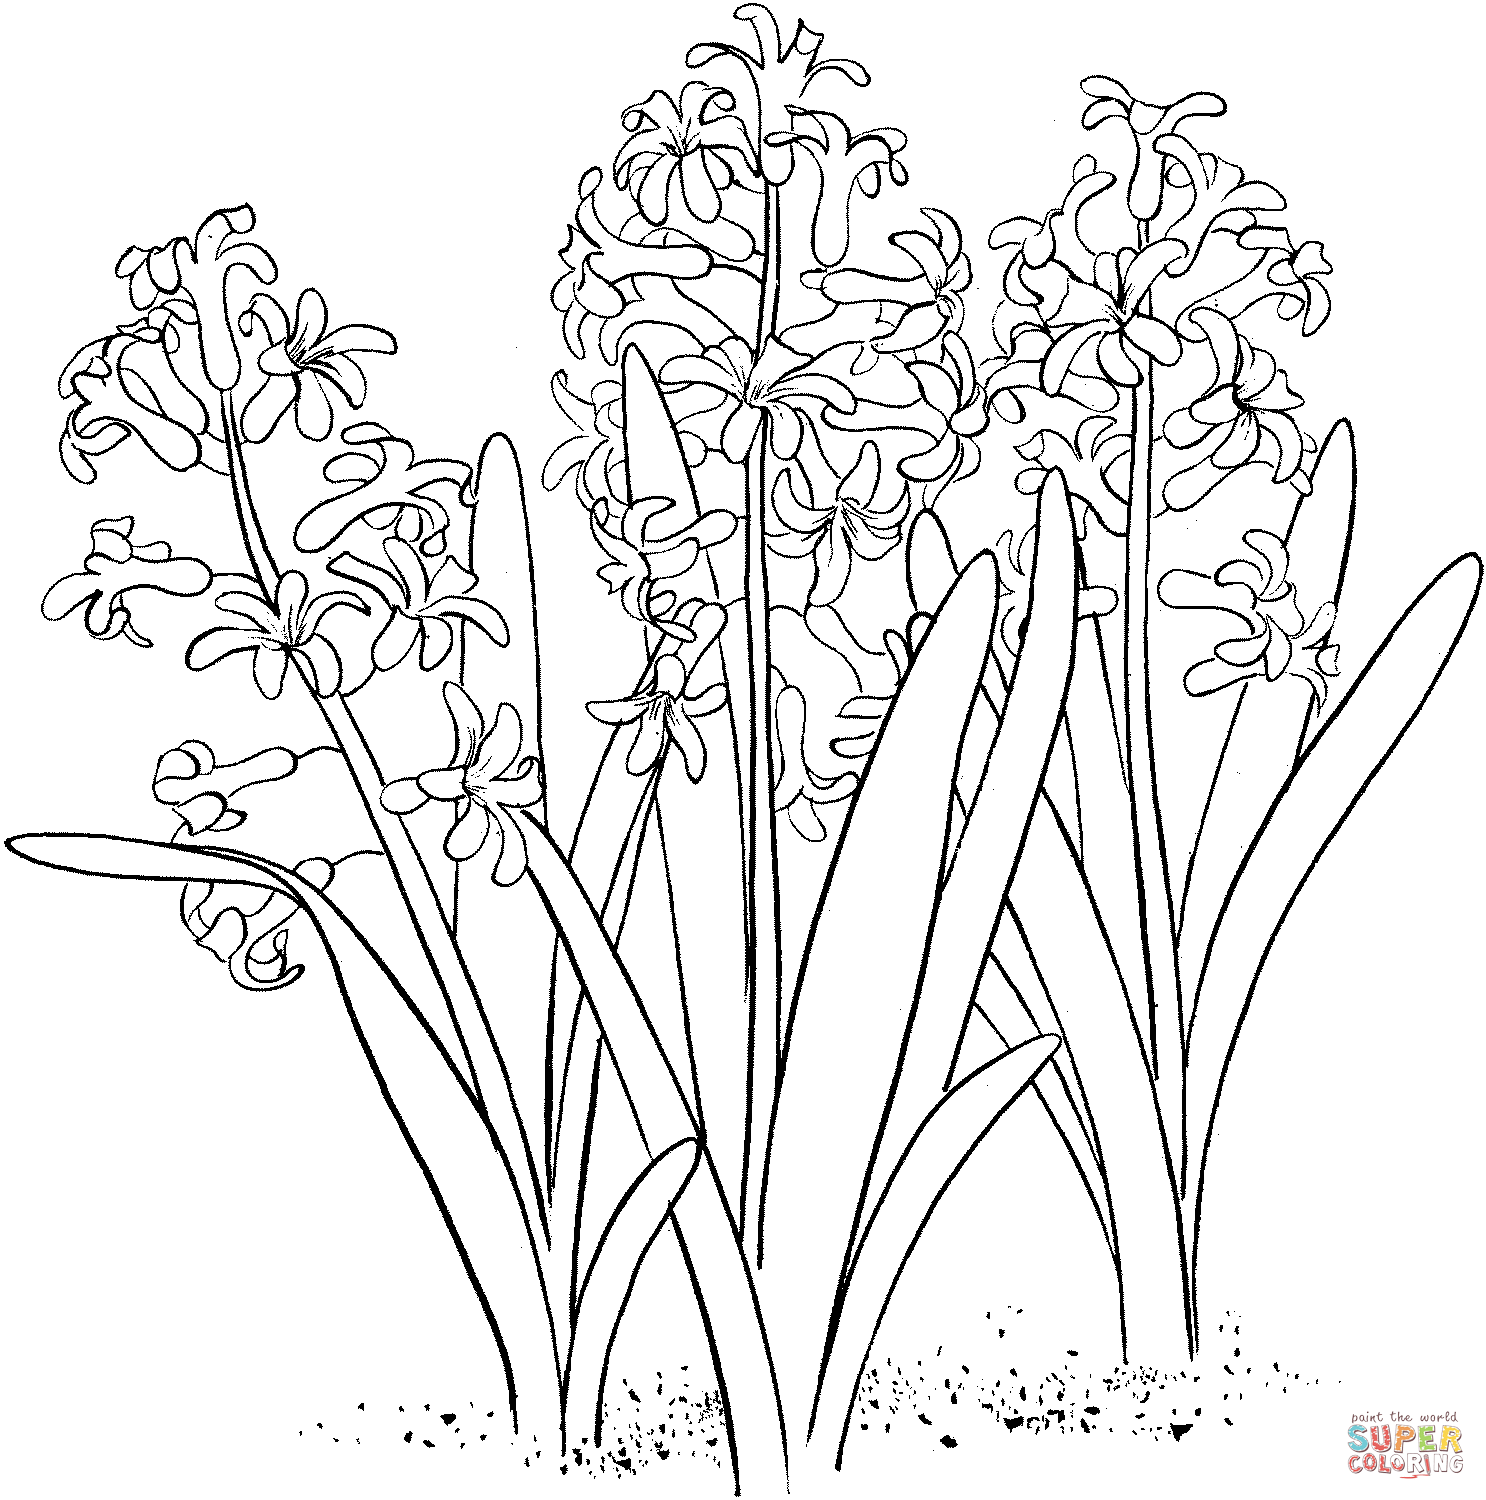 Hyacinthus orientalis o jacinto de jardín común de Hyacinthus